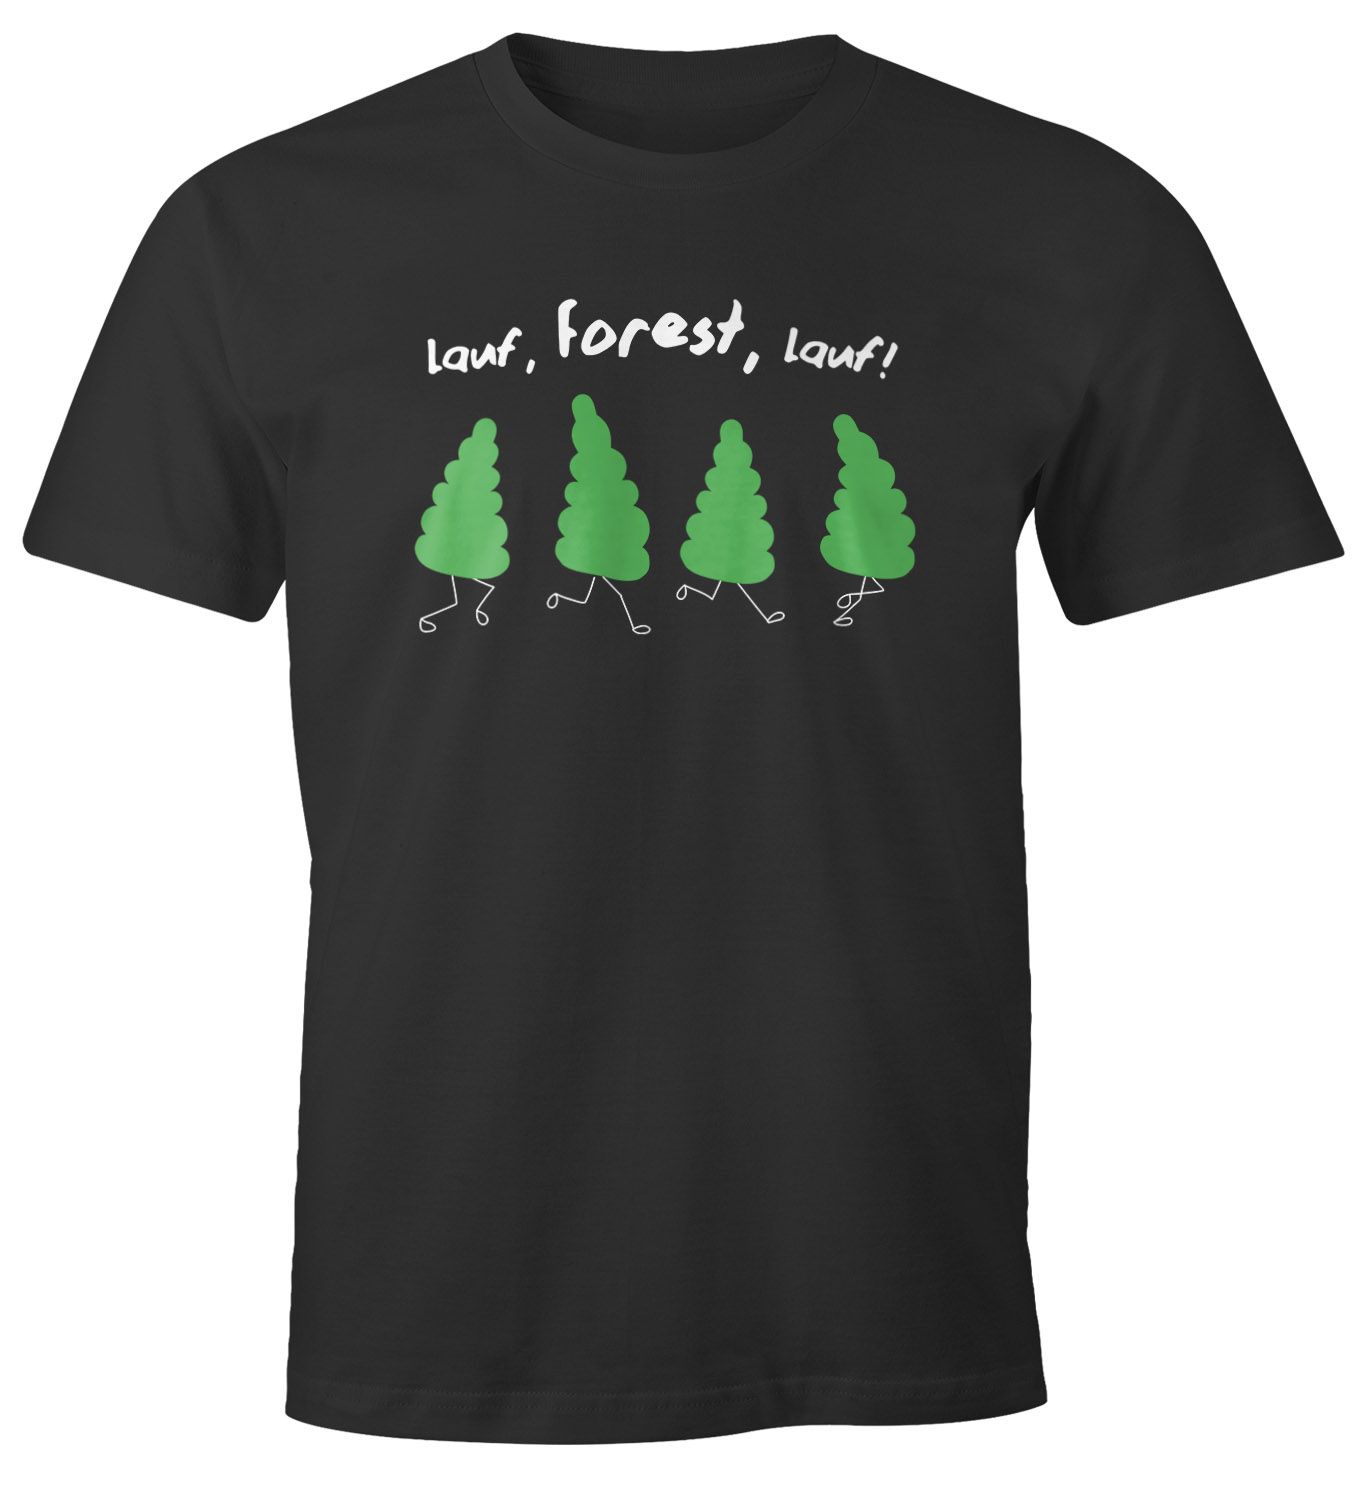 Herren T-Shirt Fun-Shirt Spruch lustig lauf Forest lauf Baum Motiv Parodie Filmzitat Wortspiel Moonworks®